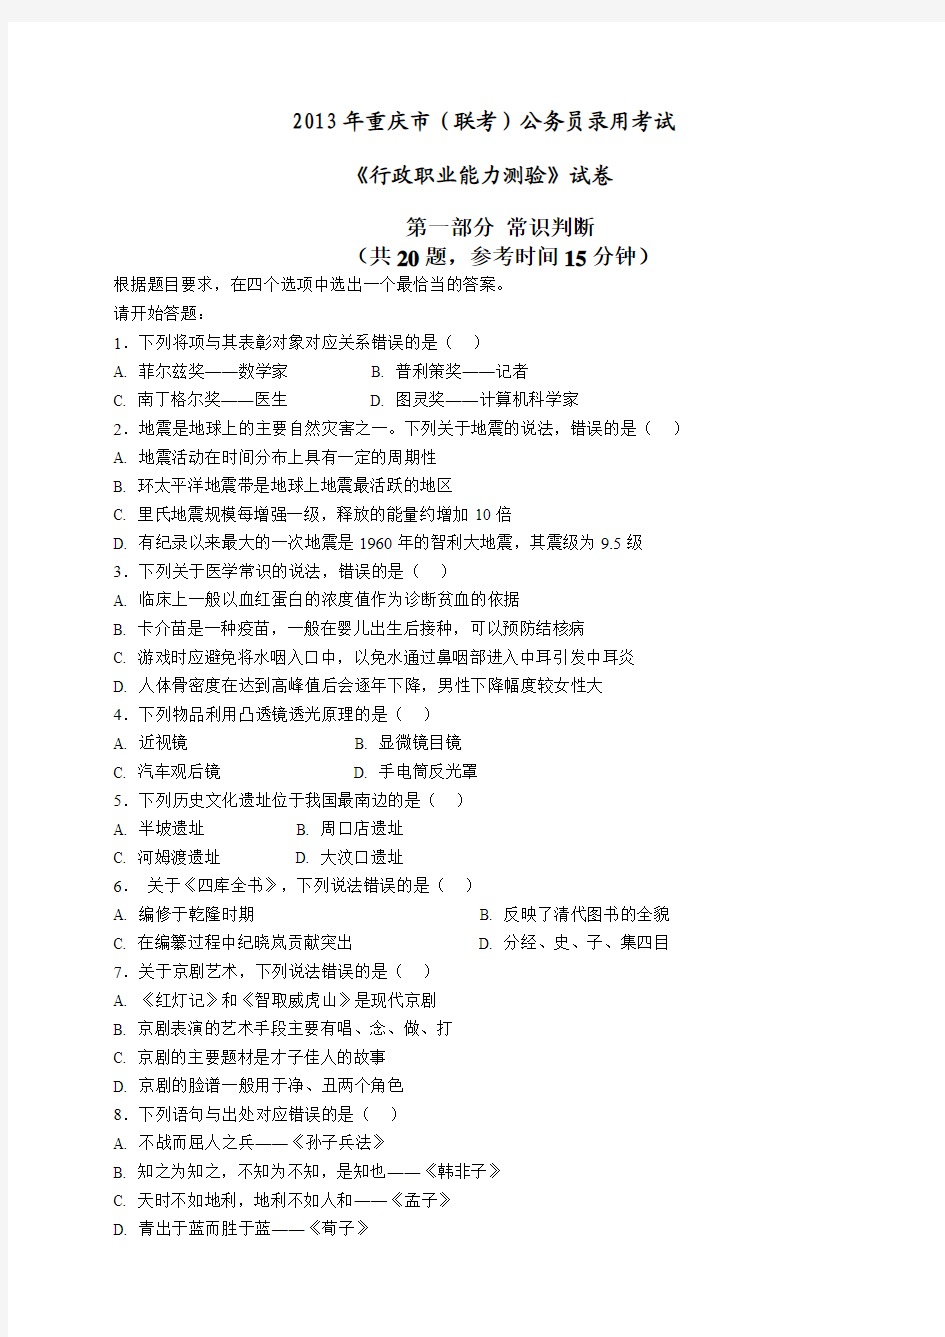 2013年重庆市公务员考试行测真题及答案解析